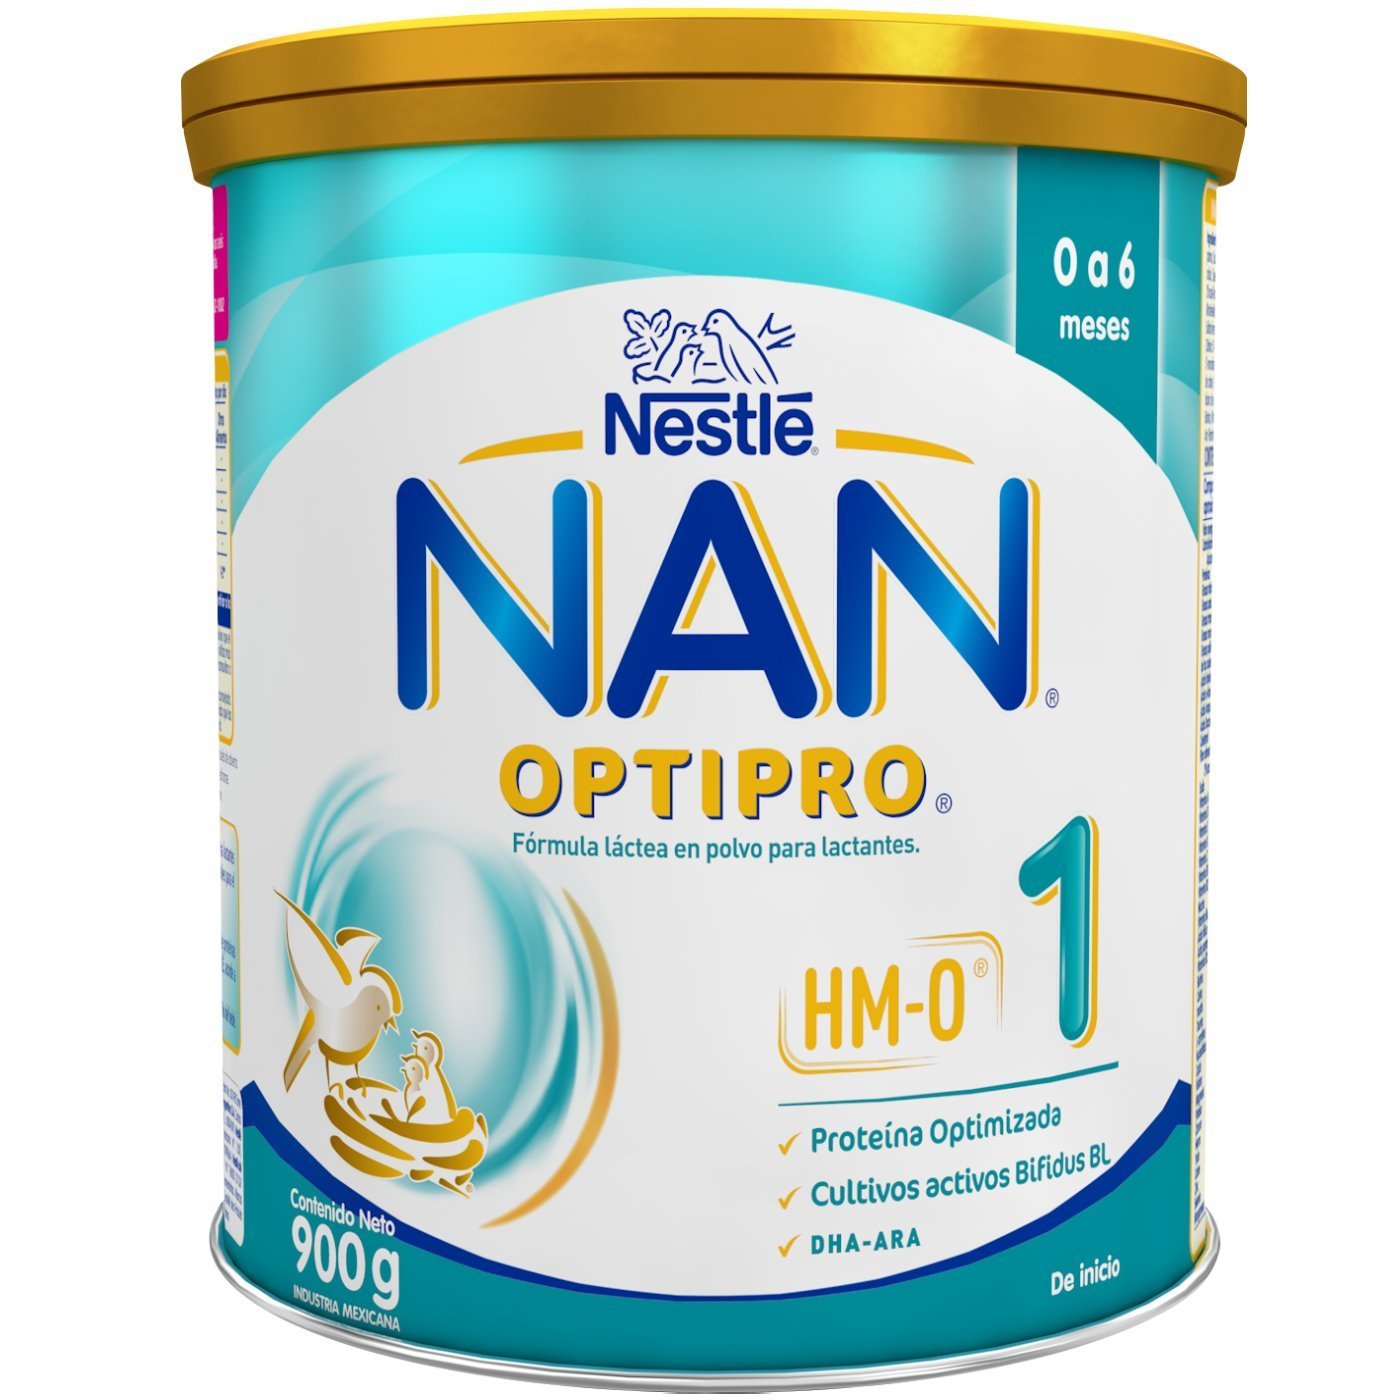 Nestlé leche Nan 1 - Farmacia Maestre